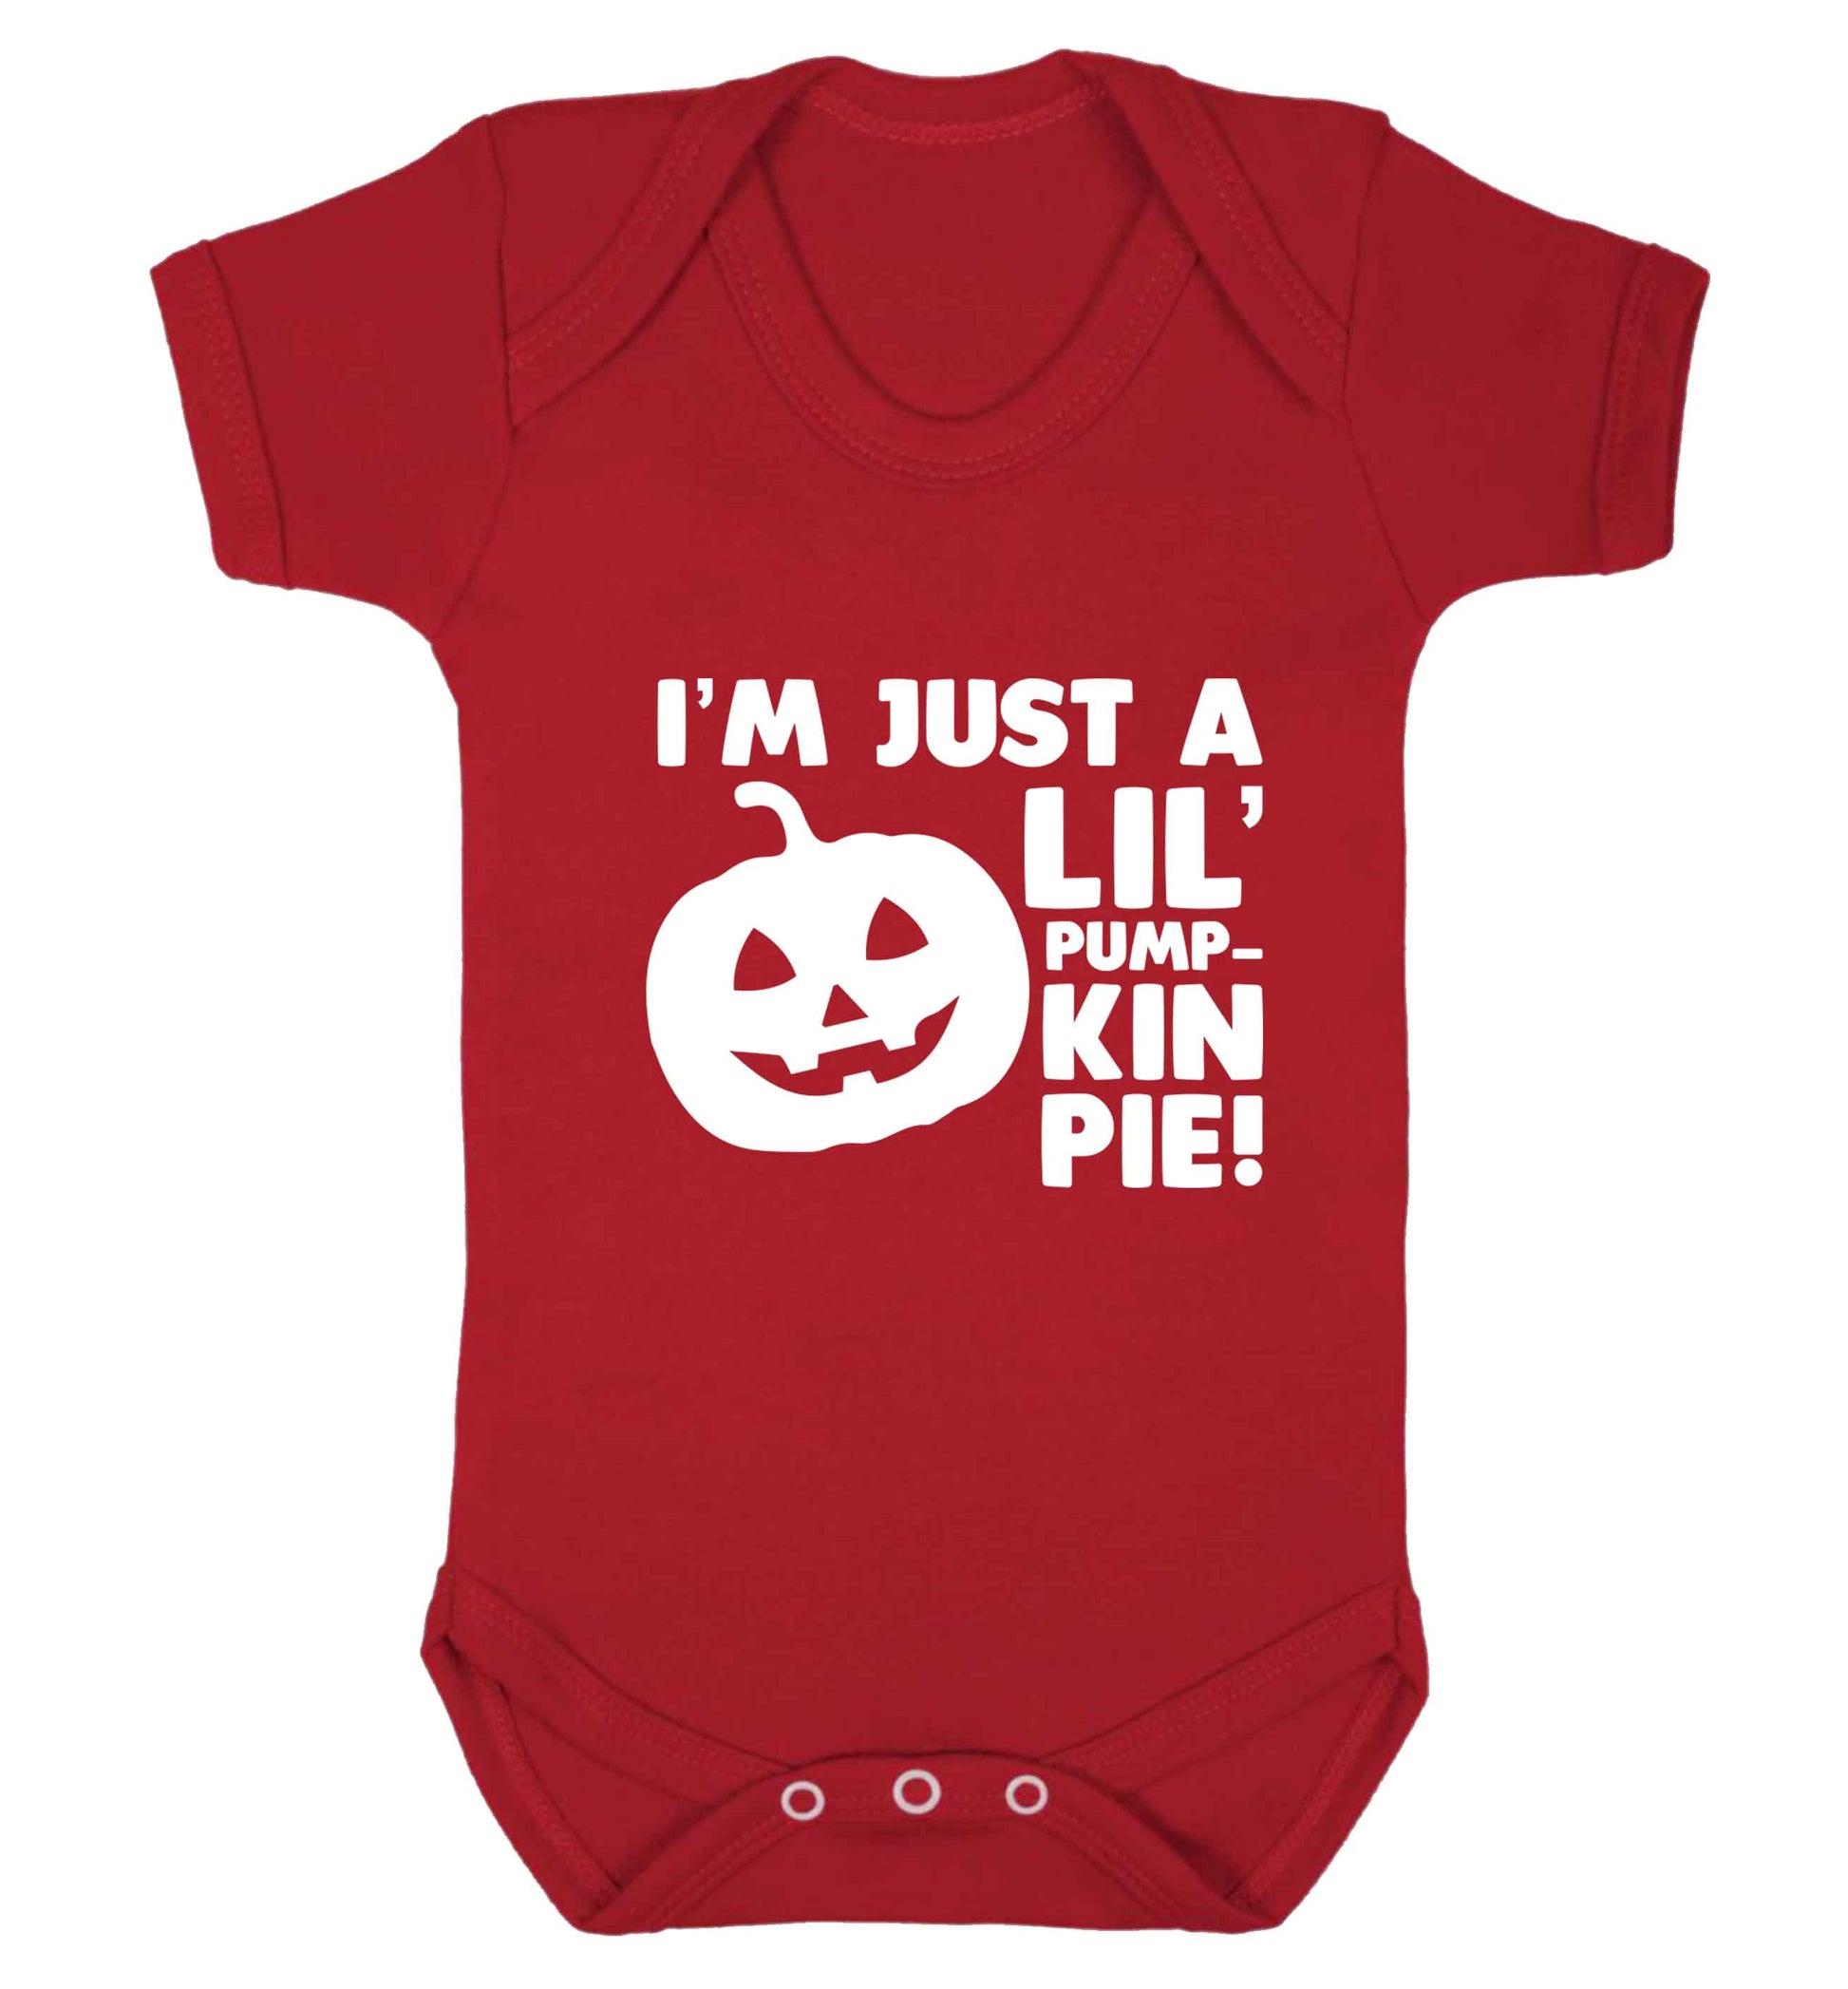 I'm just a lil' pumpkin pie baby vest red 18-24 months